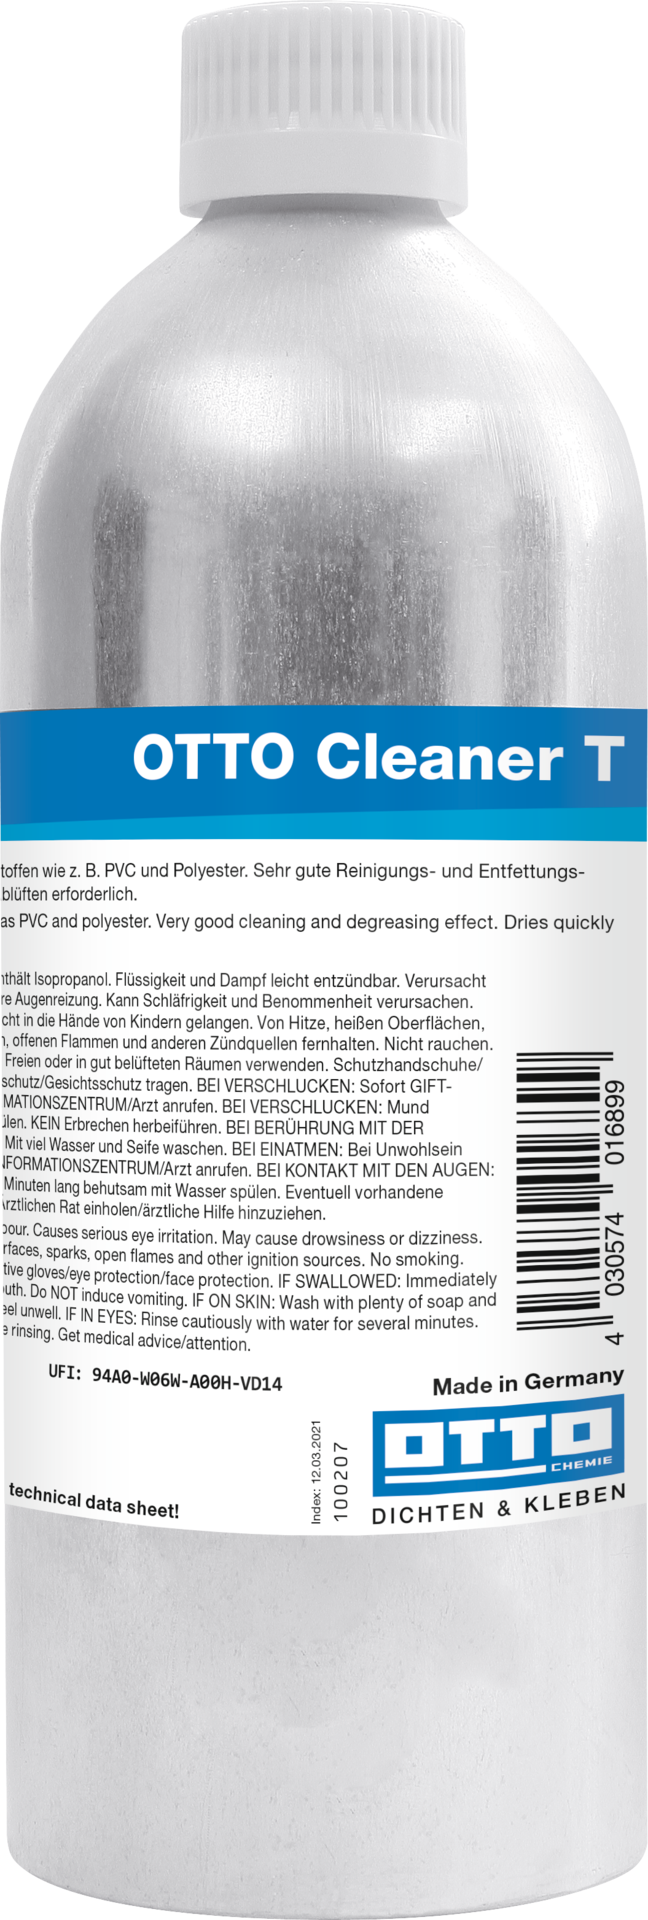 Otto Cleaner T - Der Standard-Reiniger